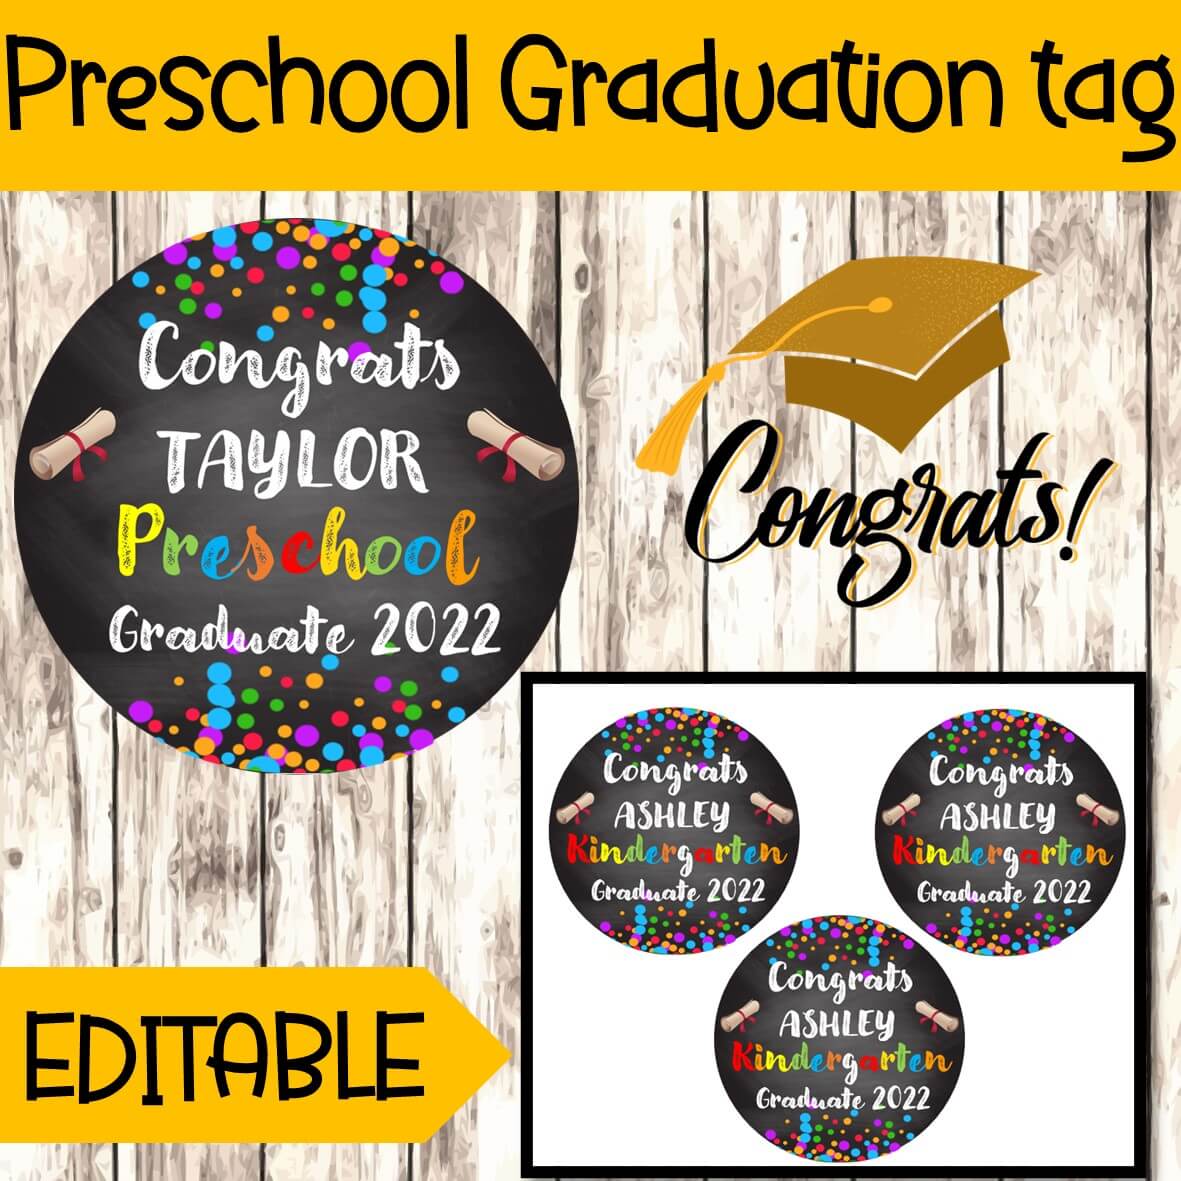 EDITABLE Preschool Graduation Gift Tags, Congrats Preschool Graduate tags